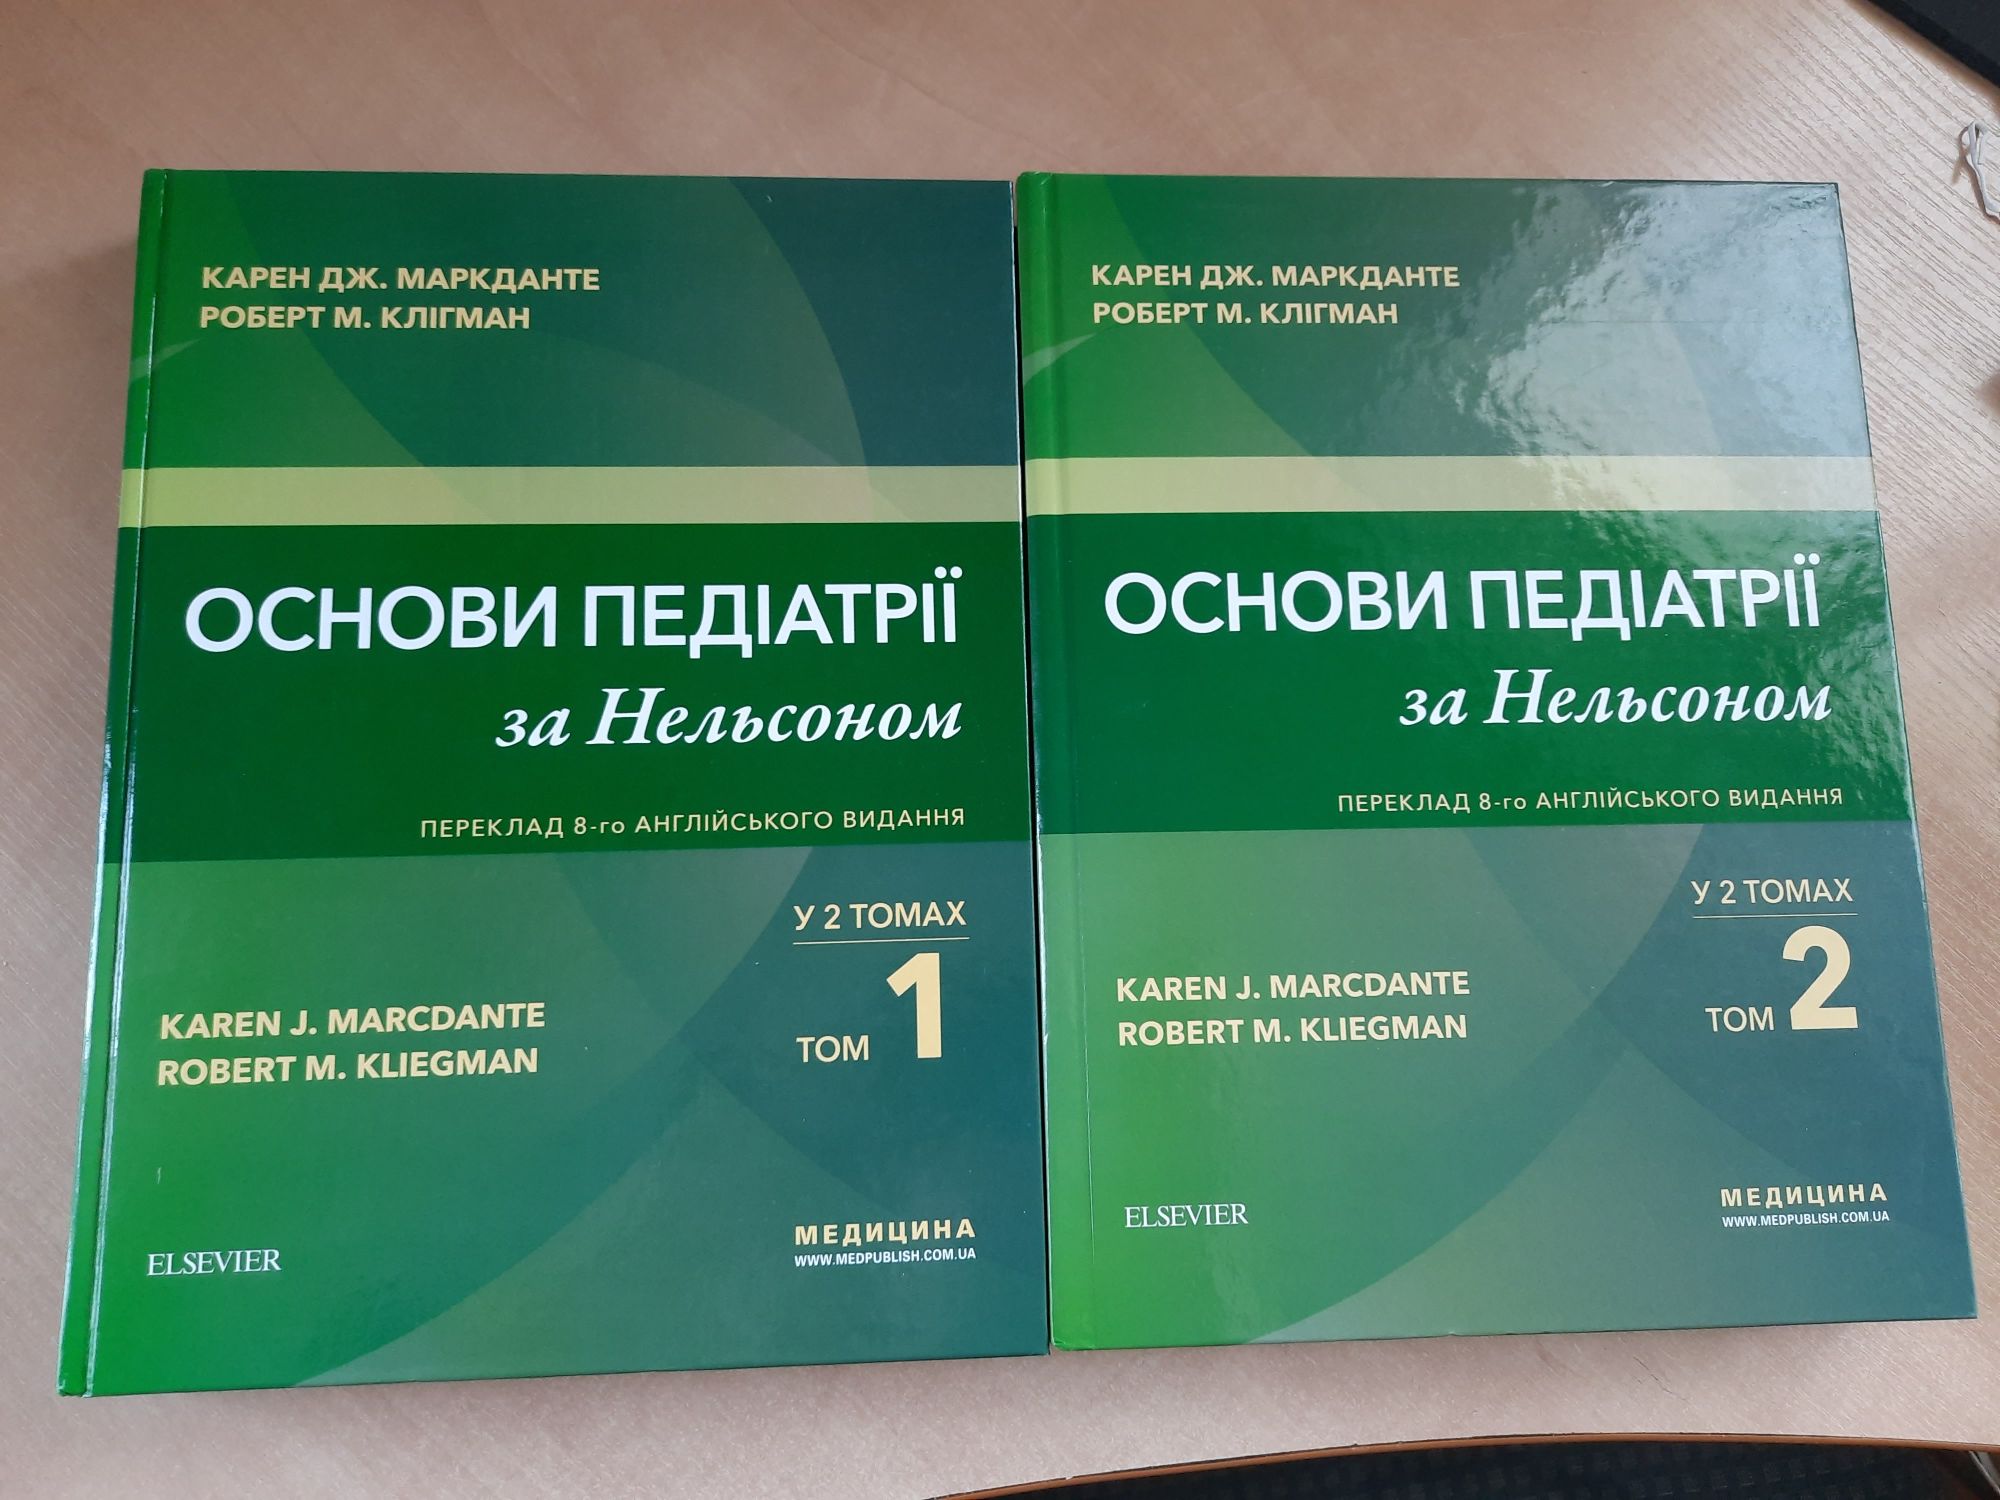 Основи педіатрії по Нельсону 1 та 2 том українською